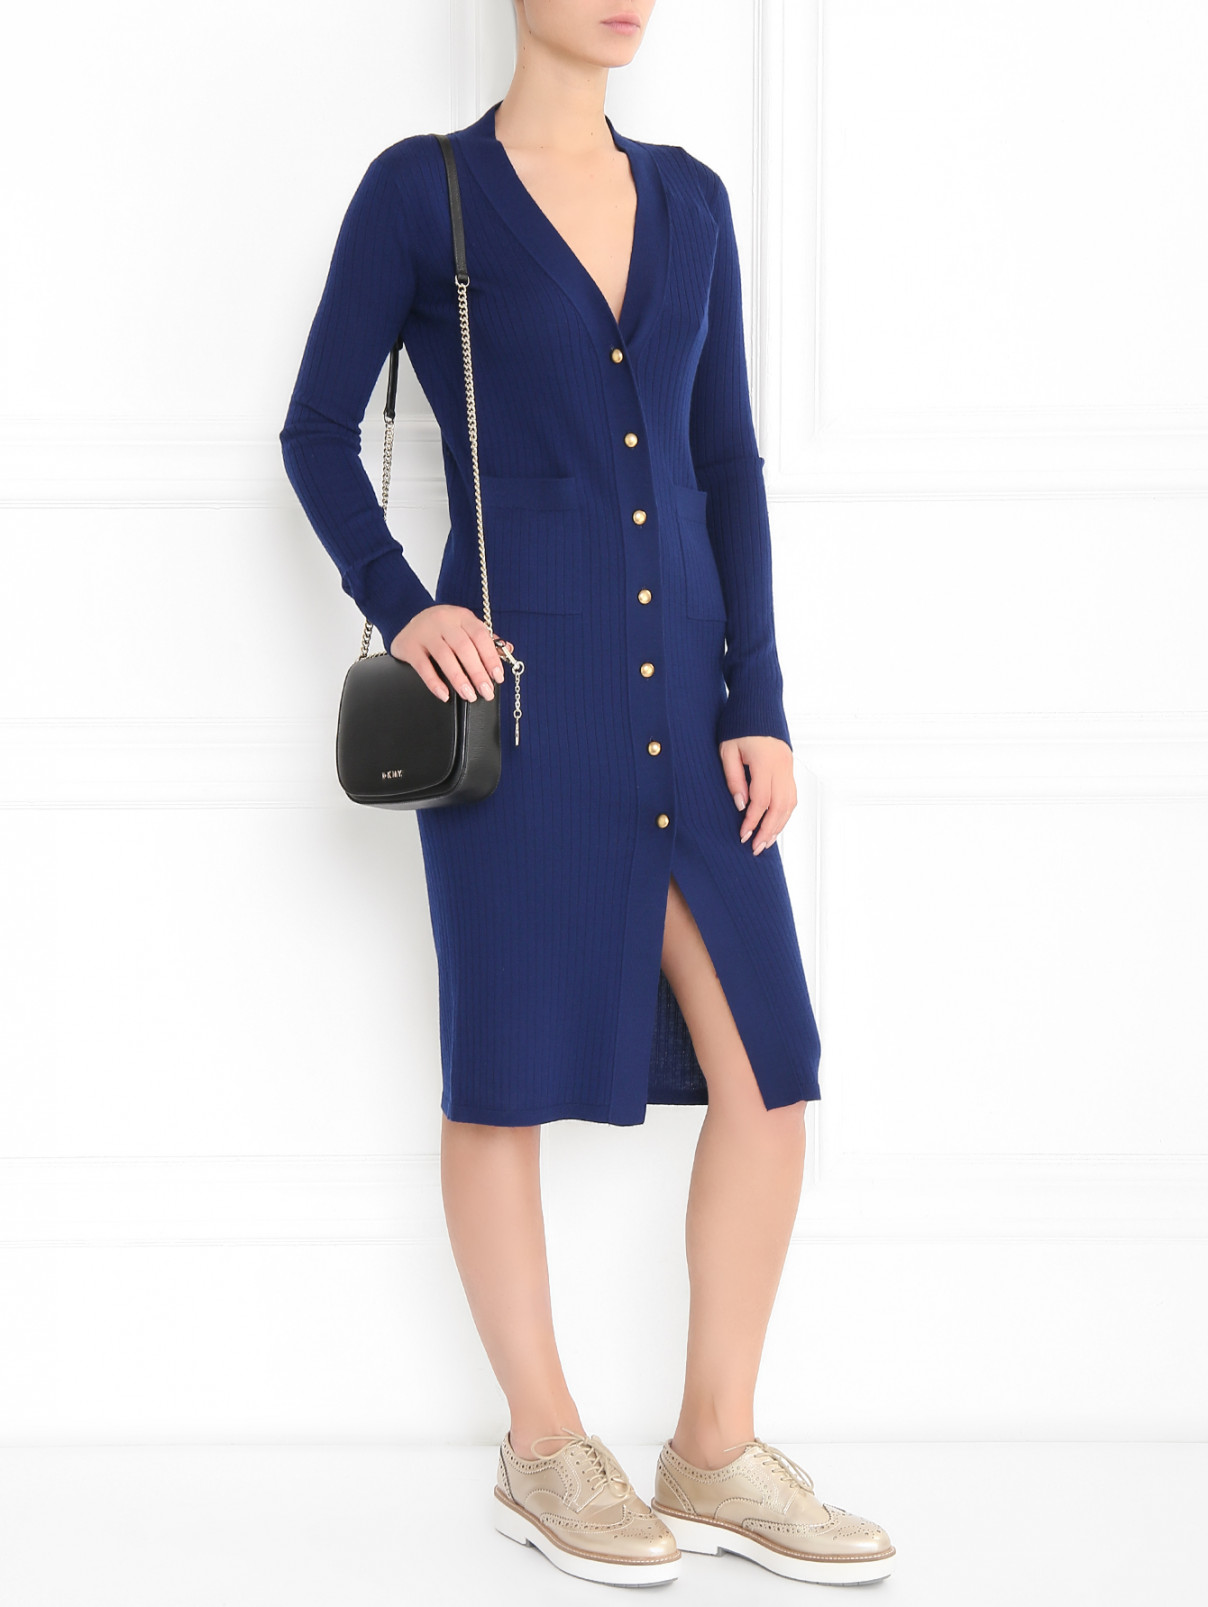 Платье-миди из шерсти фактурной вязки Mo&Co  –  Модель Общий вид  – Цвет:  Синий